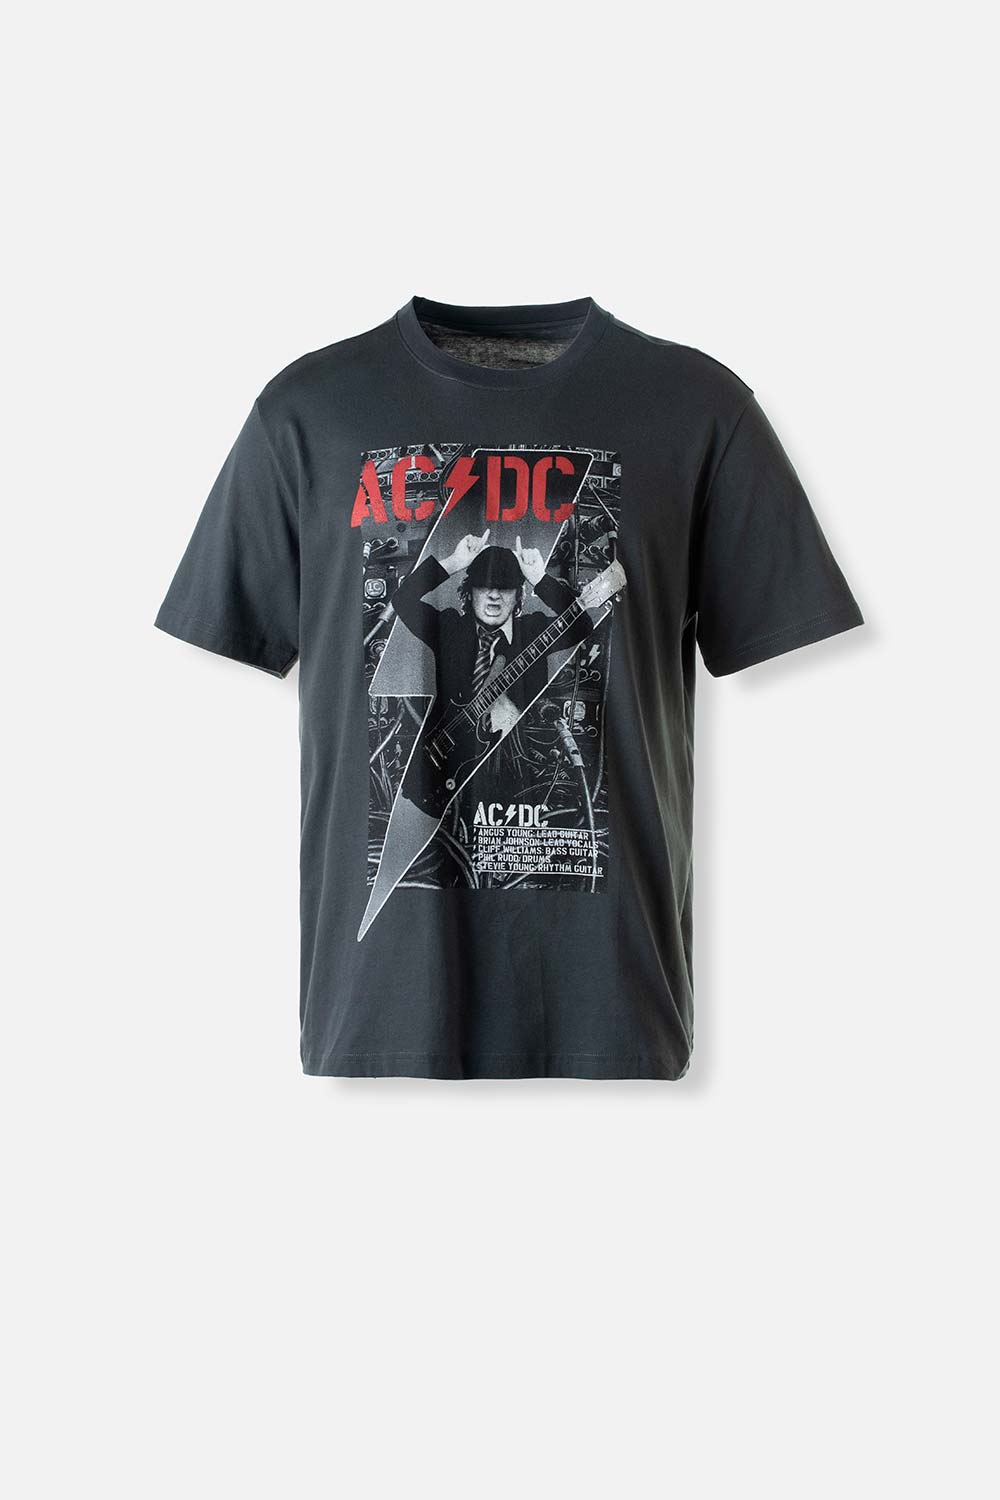 Camiseta de AC/DC gris manga corta para hombre S-0